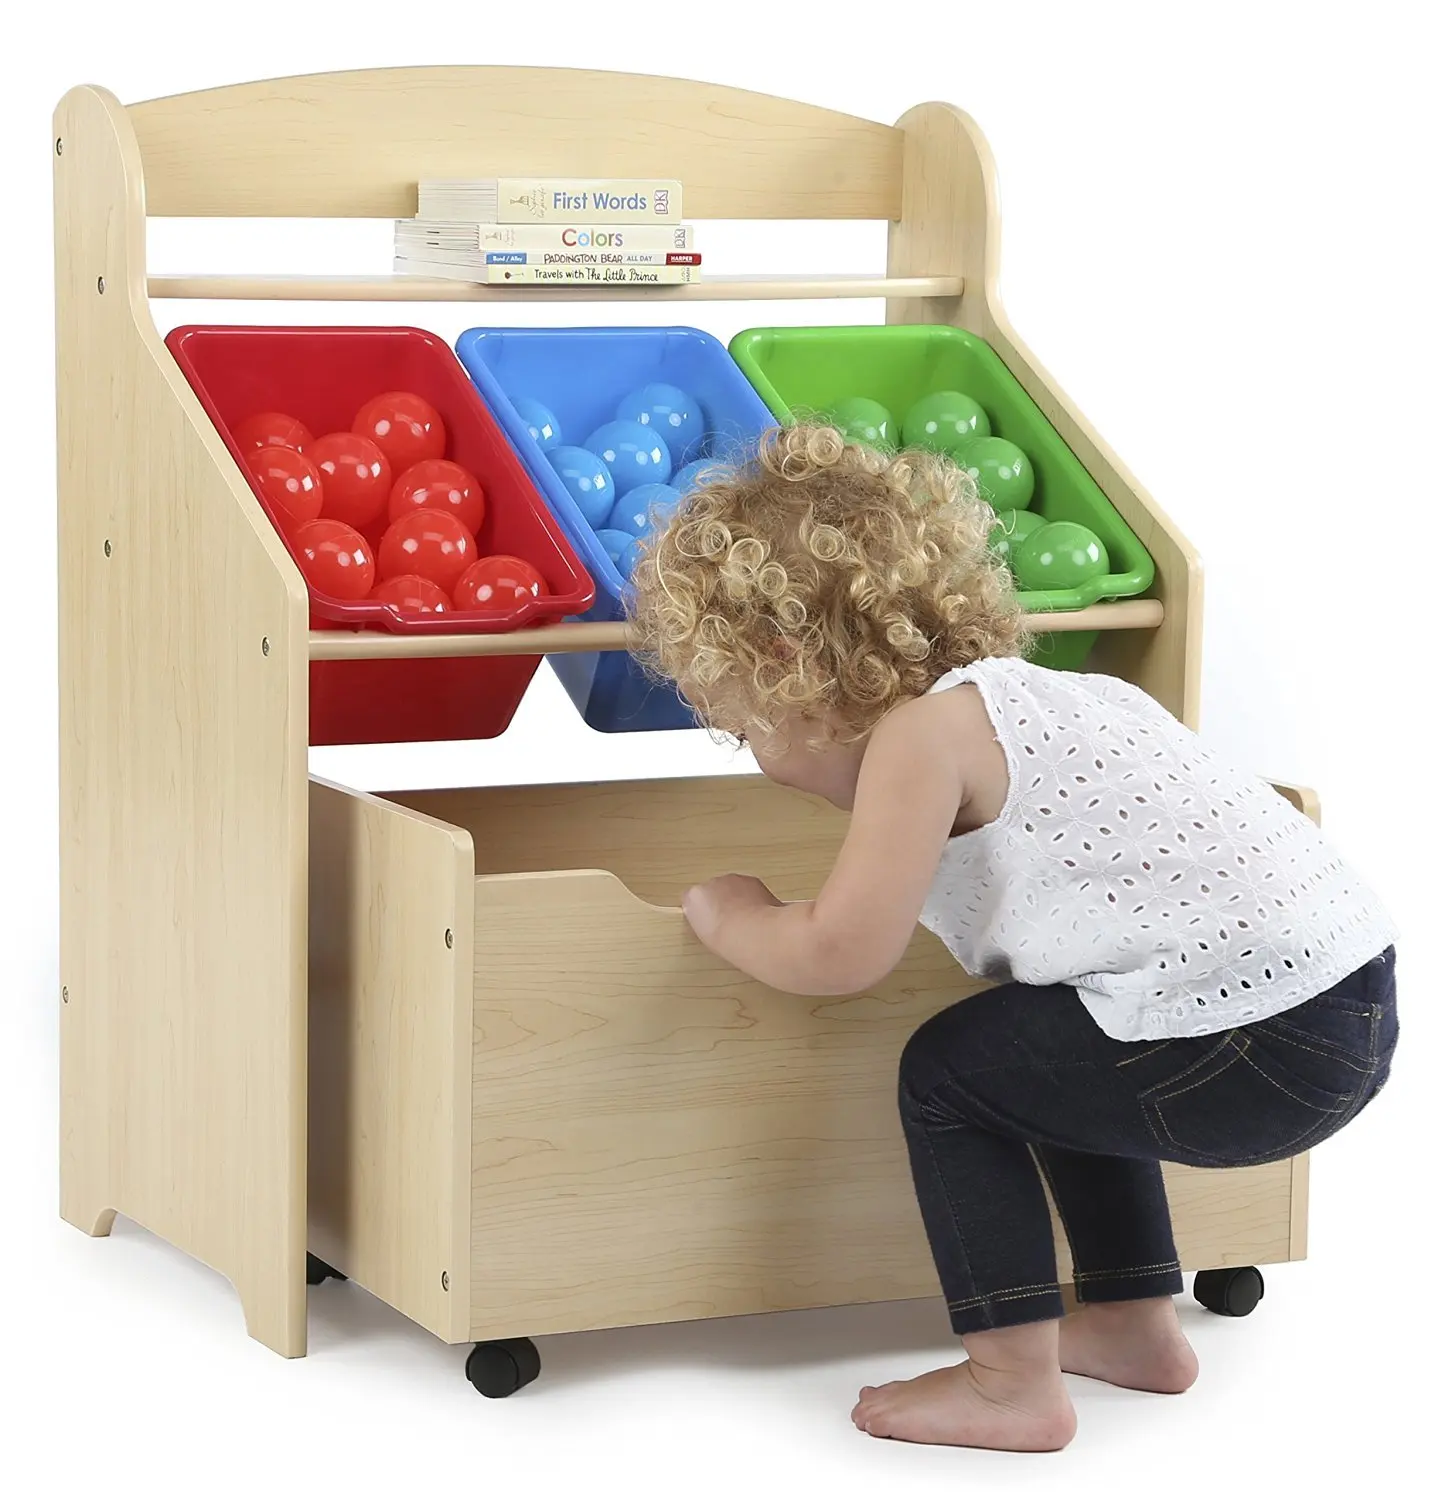 Buy Kids Wooden Toy Box Organizer Storage Chest With Bins